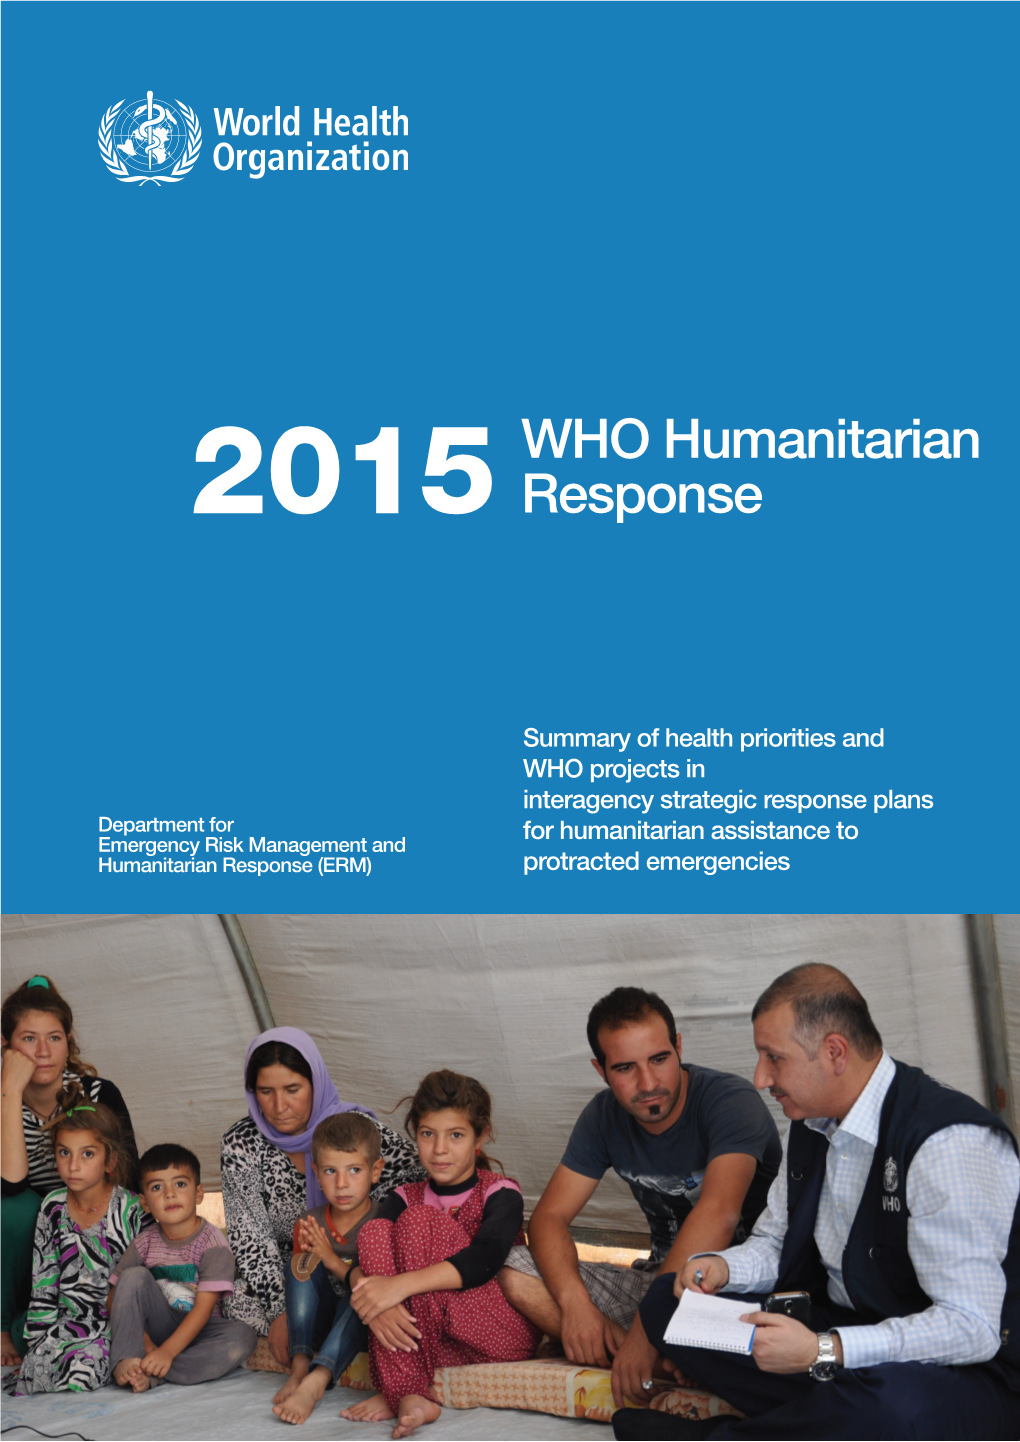 Humanitarian Response Plans in 2015